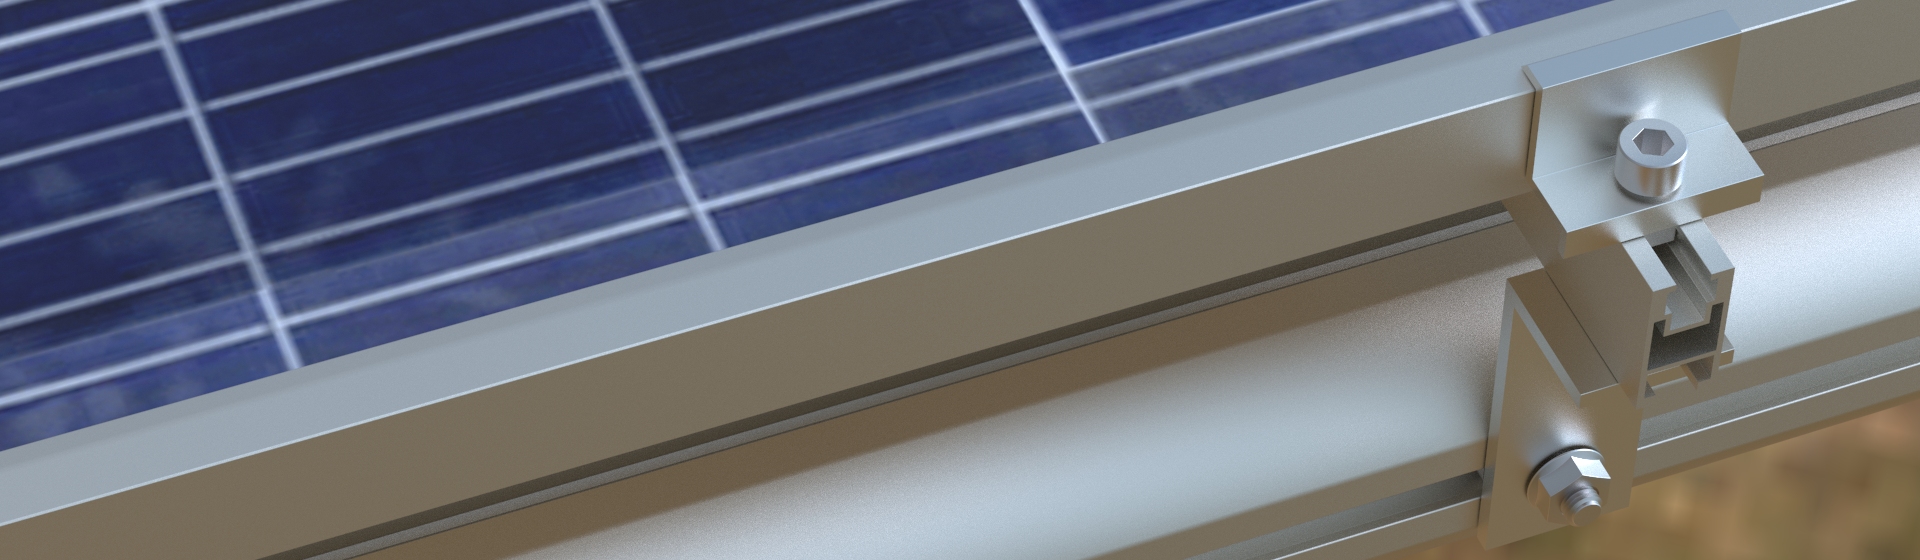 Самостоятельно
разработанная система крепления для солнечных
батарей DAARTS SOL